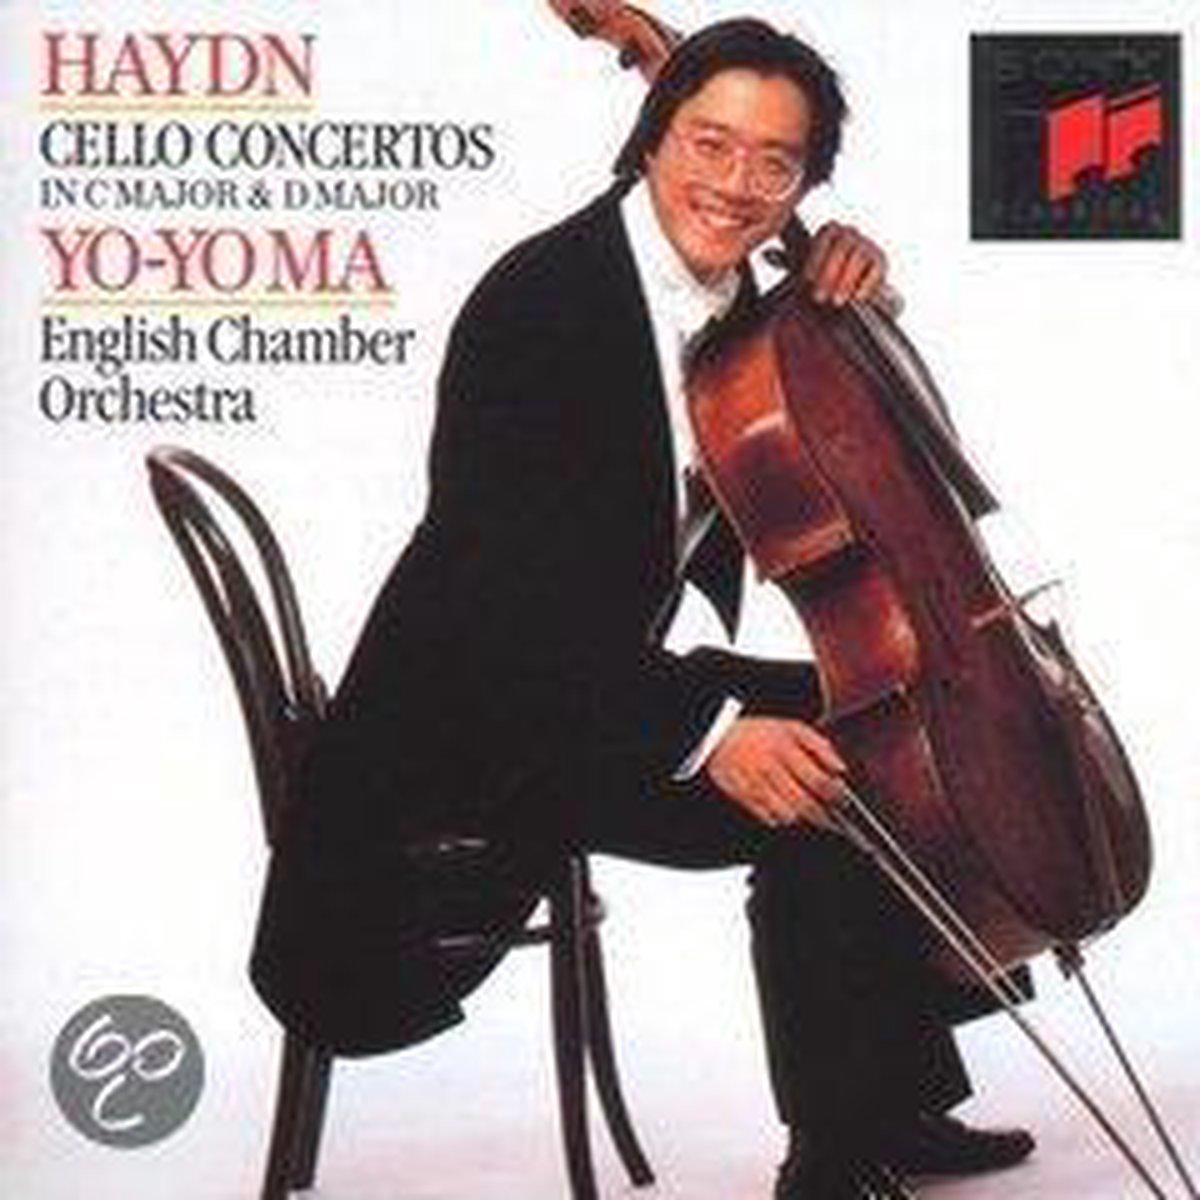 Haydn: Cello Concertos nos 1 & 2 / Ma, Garcia, English CO - Yo-Yo Ma